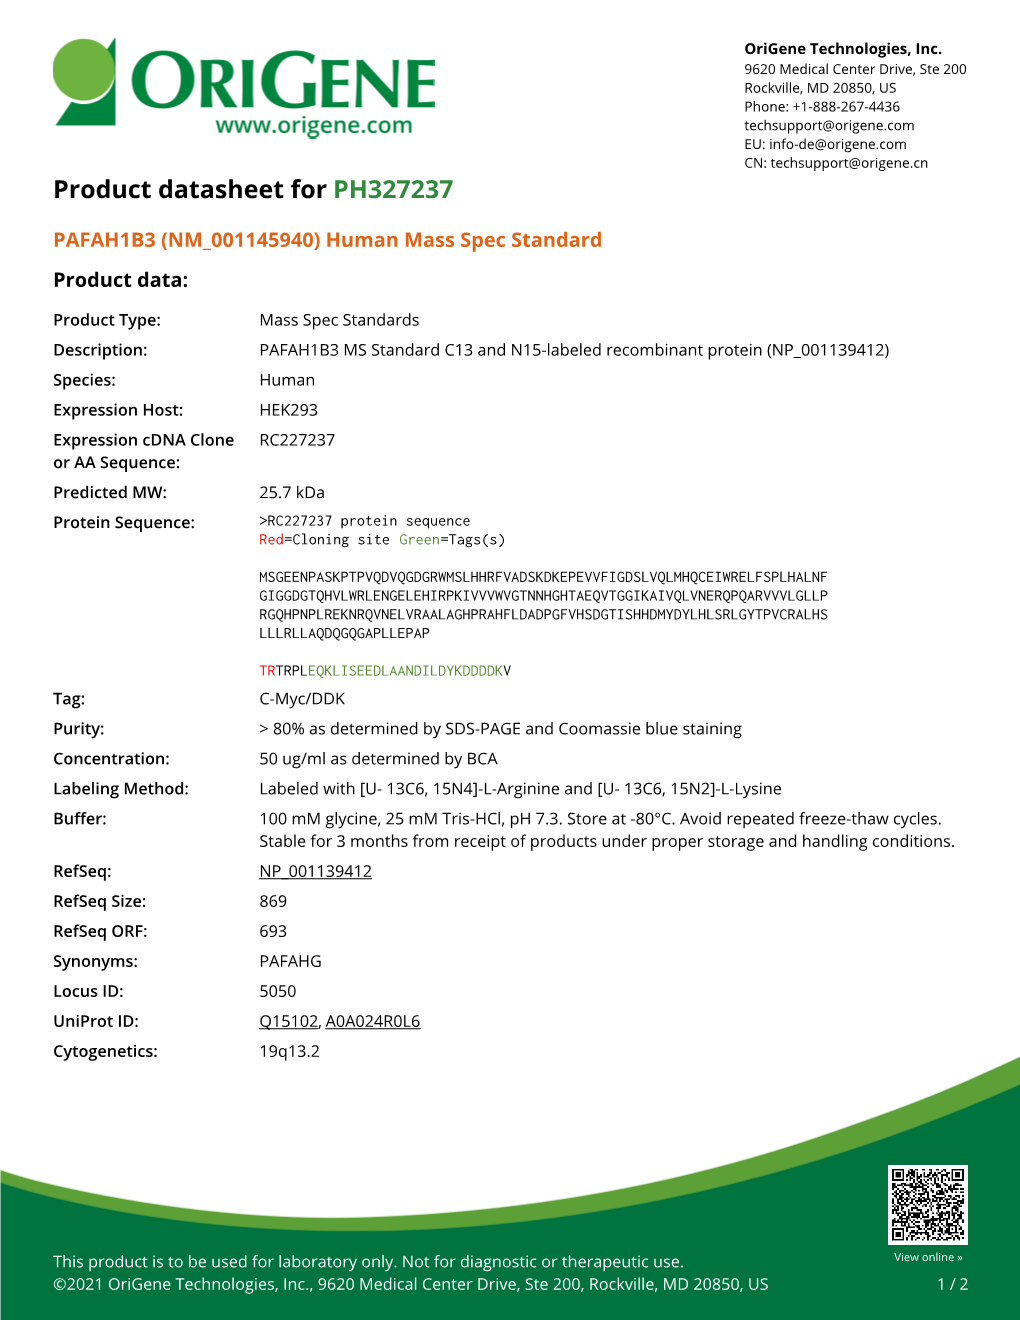 PAFAH1B3 (NM 001145940) Human Mass Spec Standard Product Data